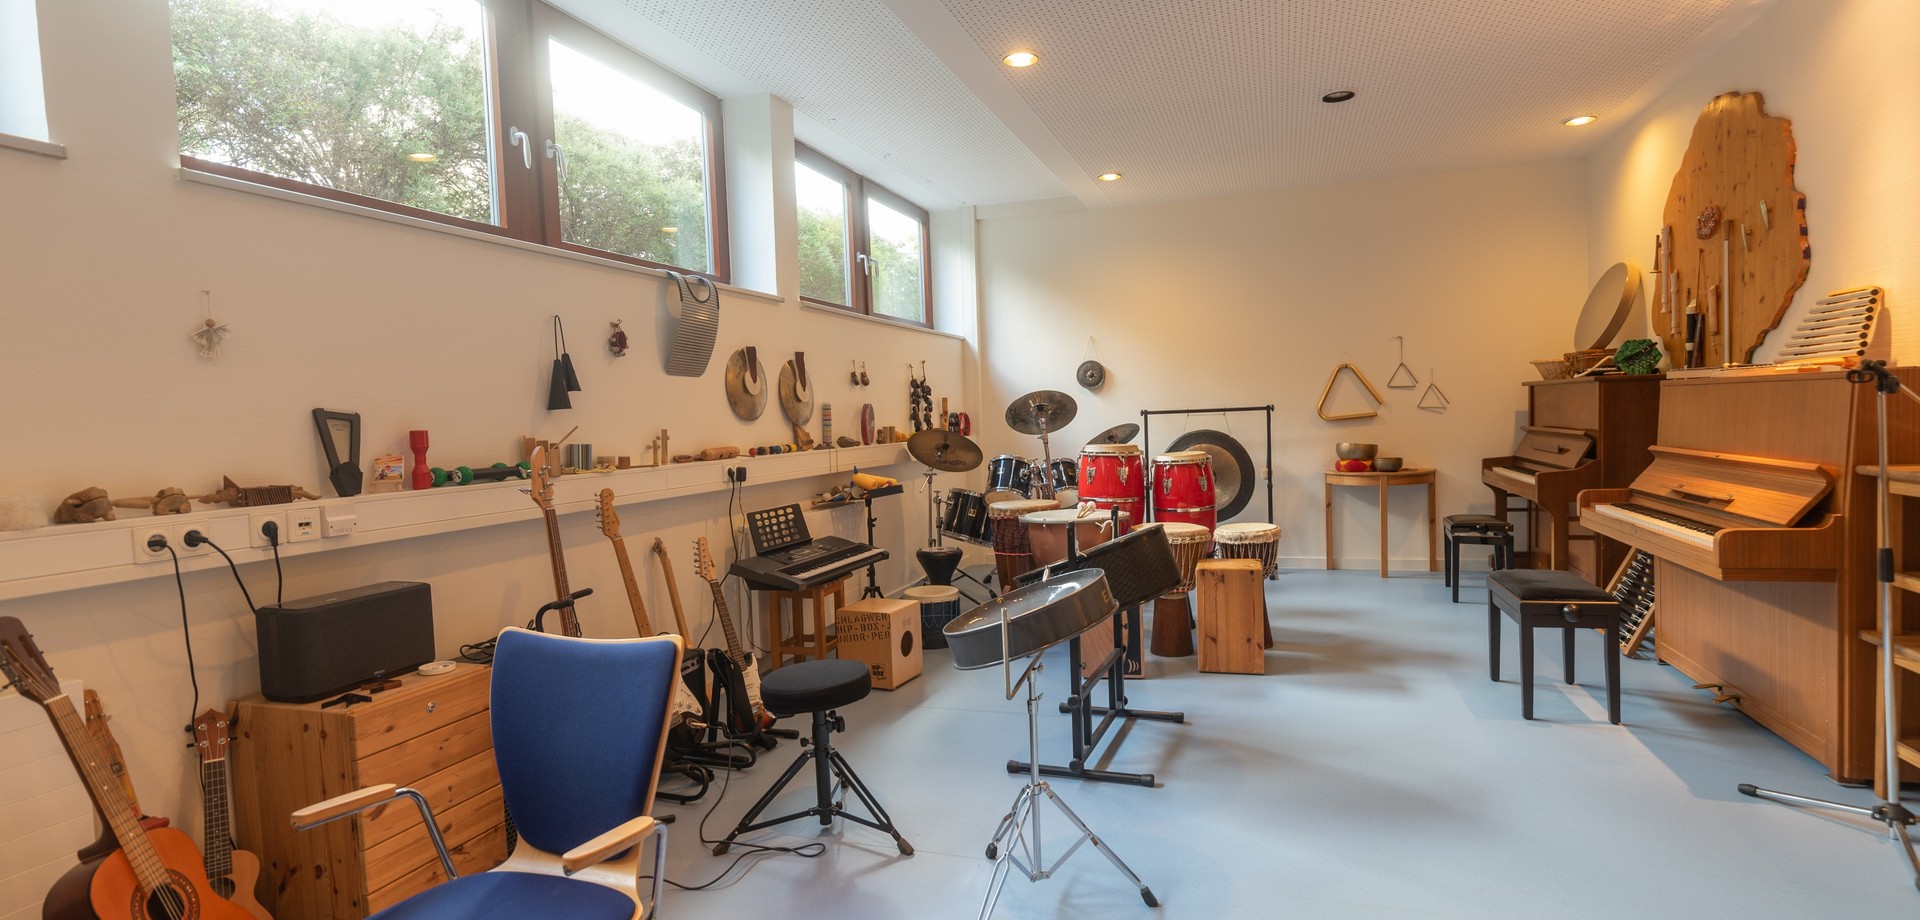 Das Bild zeigt einen Musikraum mit vielen unterschiedlichen Musikinstrumenten.